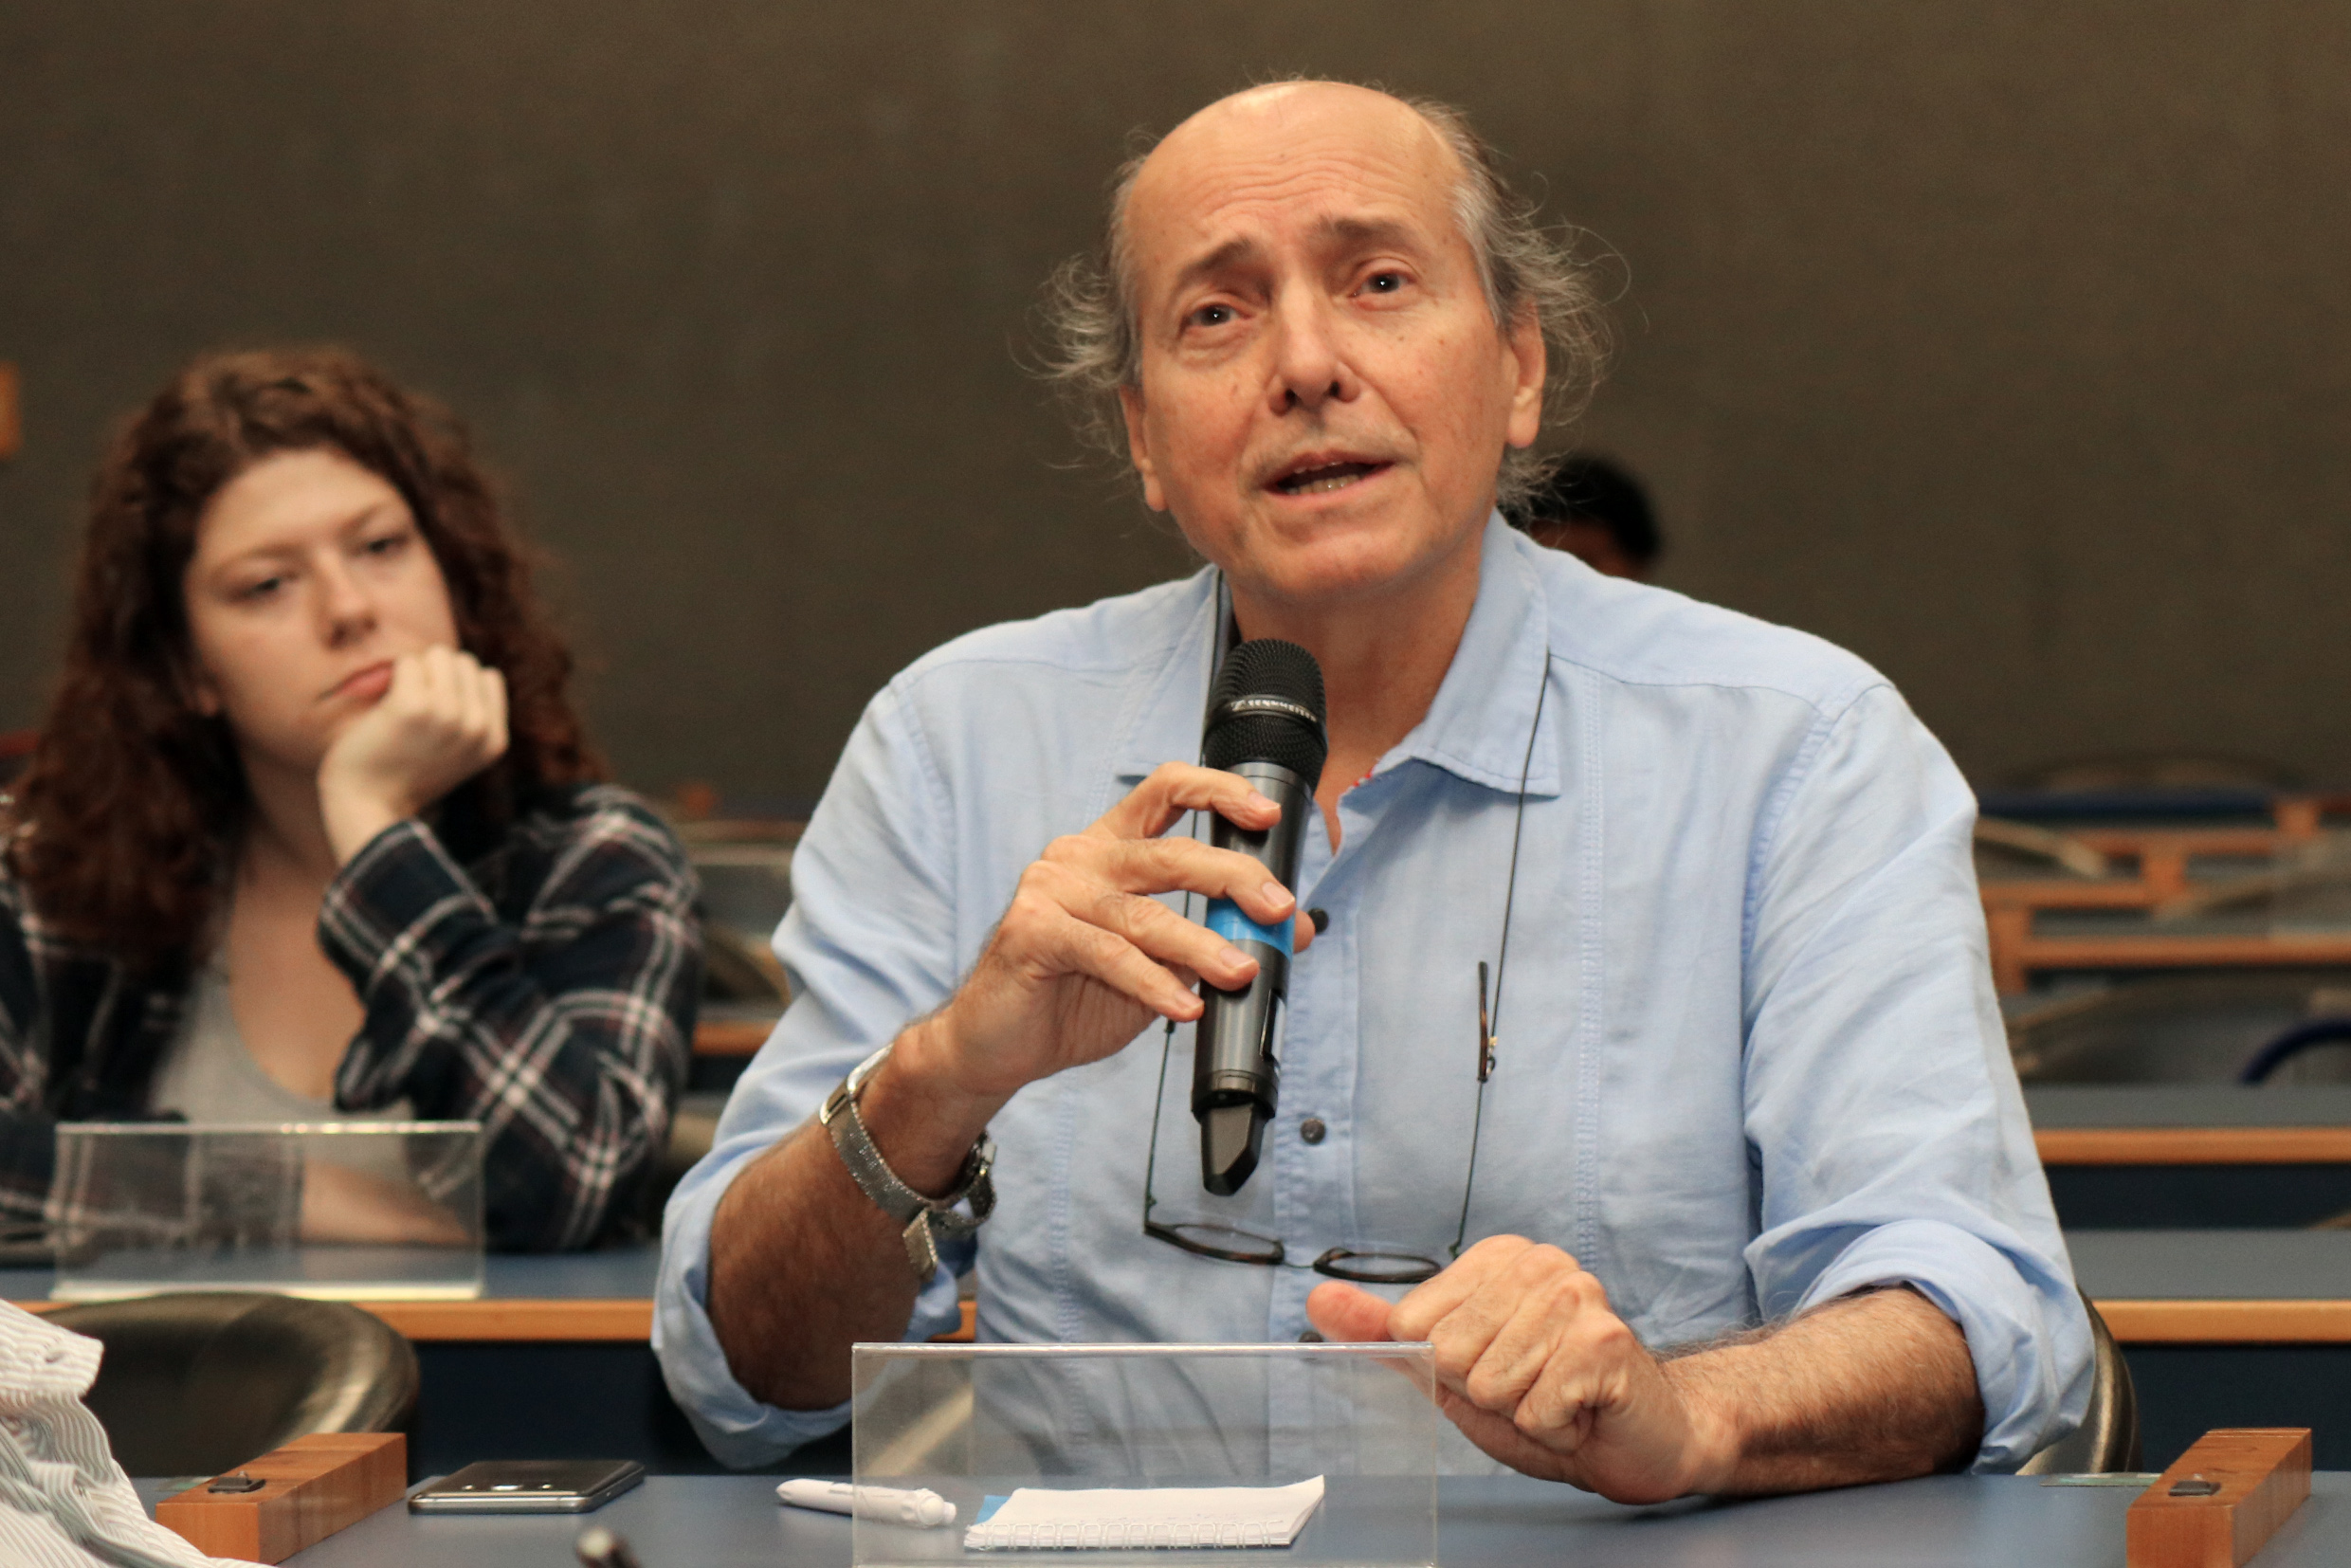 Naomar de Almeida Filho faz perguntas durante o debate